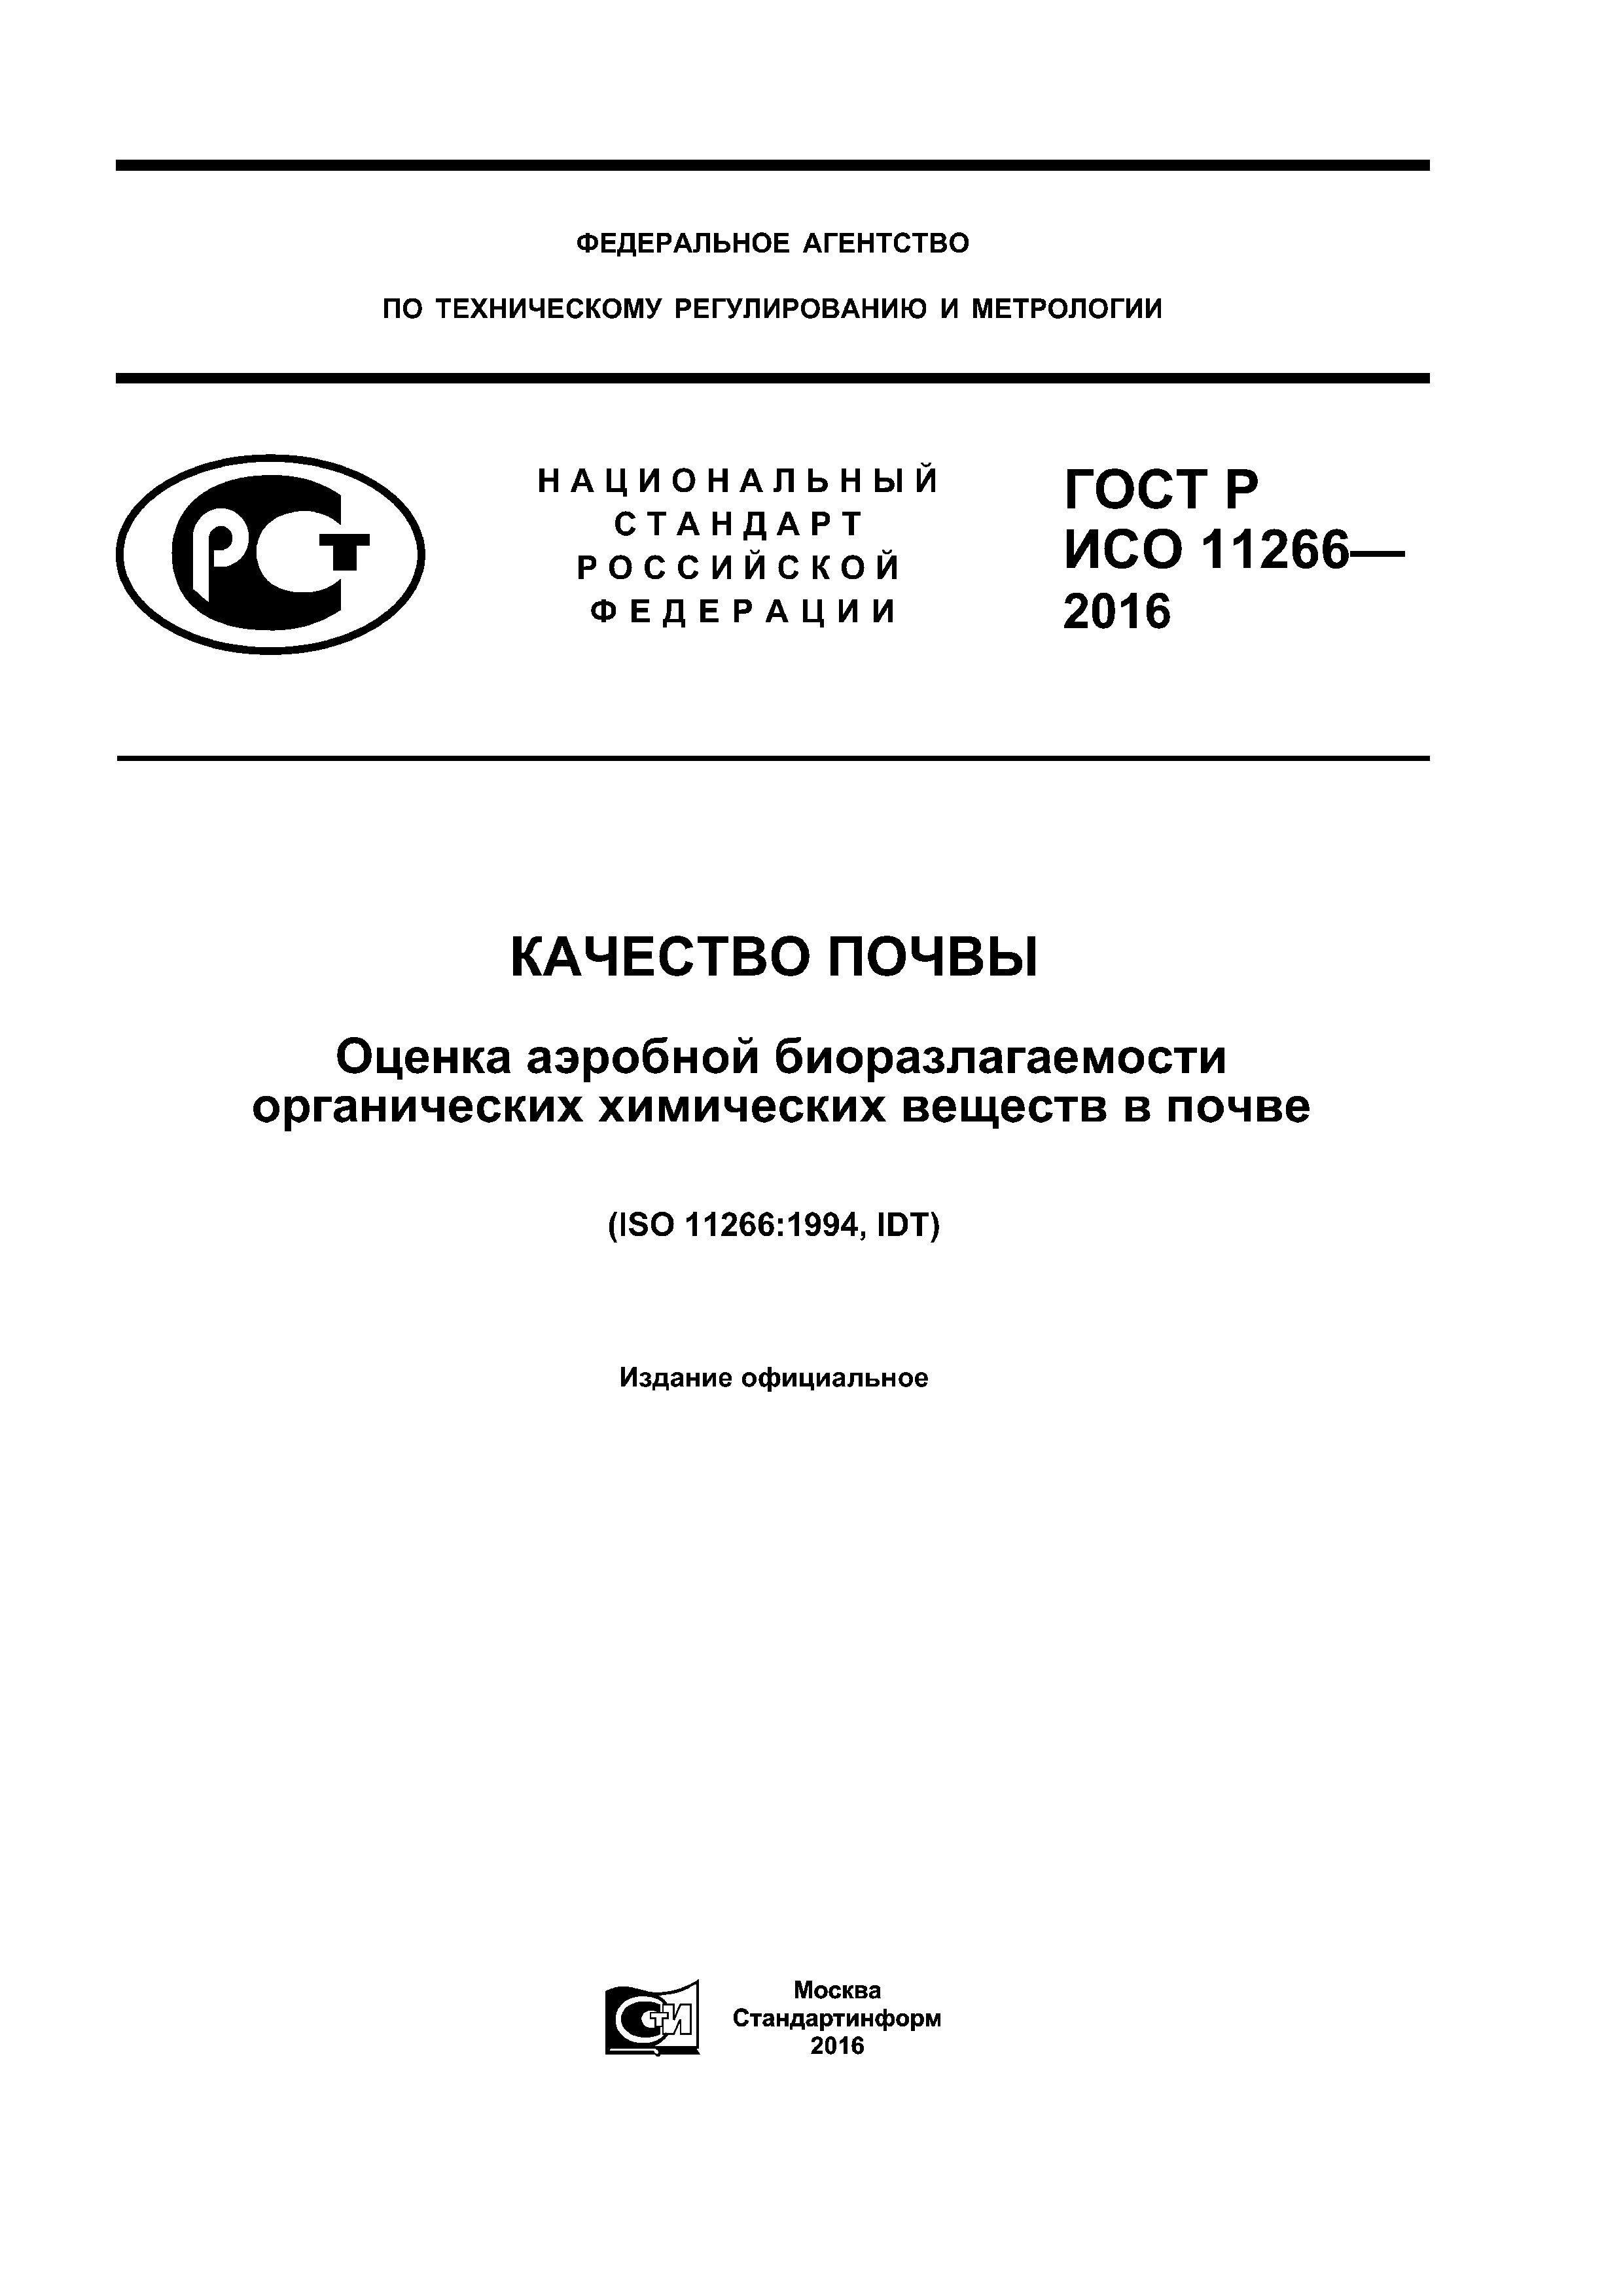 ГОСТ Р ИСО 11266-2016